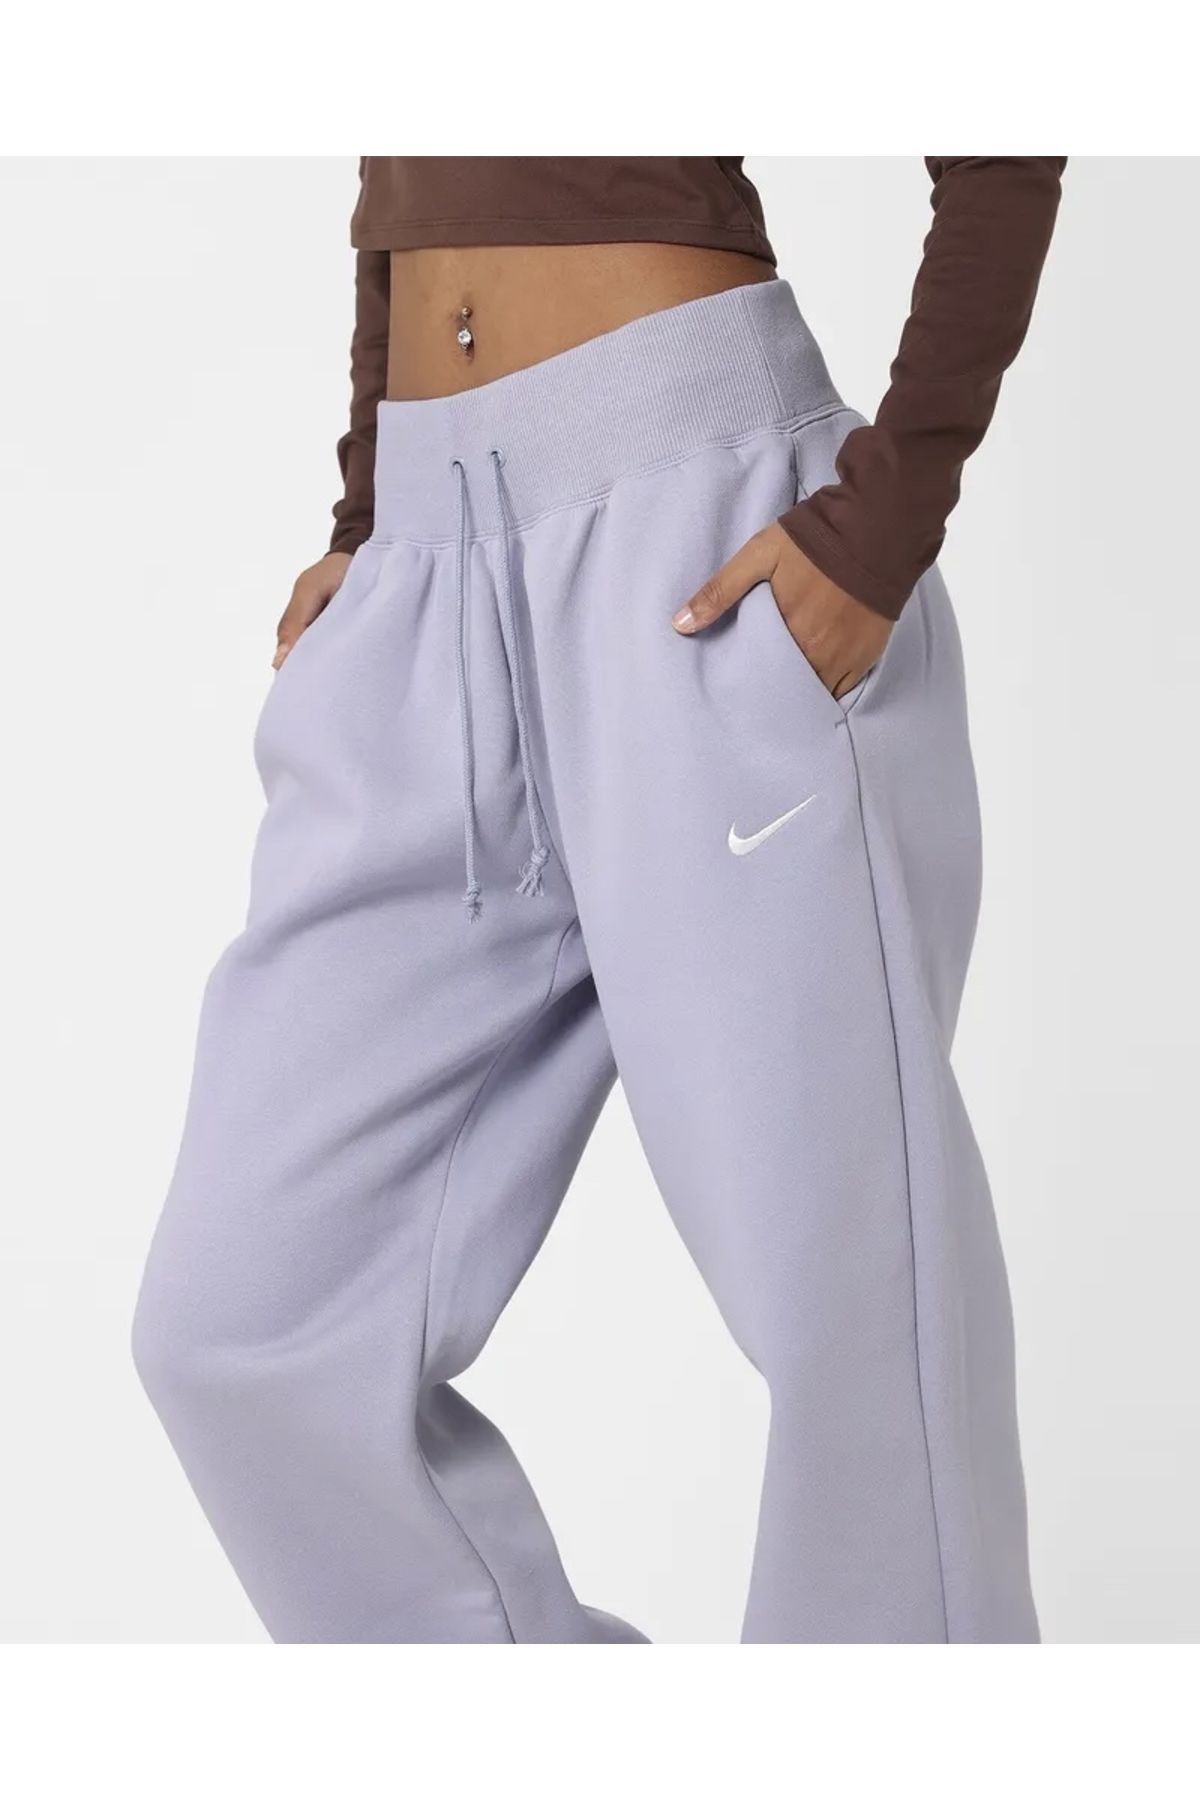 Nike Sportswear Phoenix Fleece High Waisted Loose Women's Sweatpants -  Trendyol